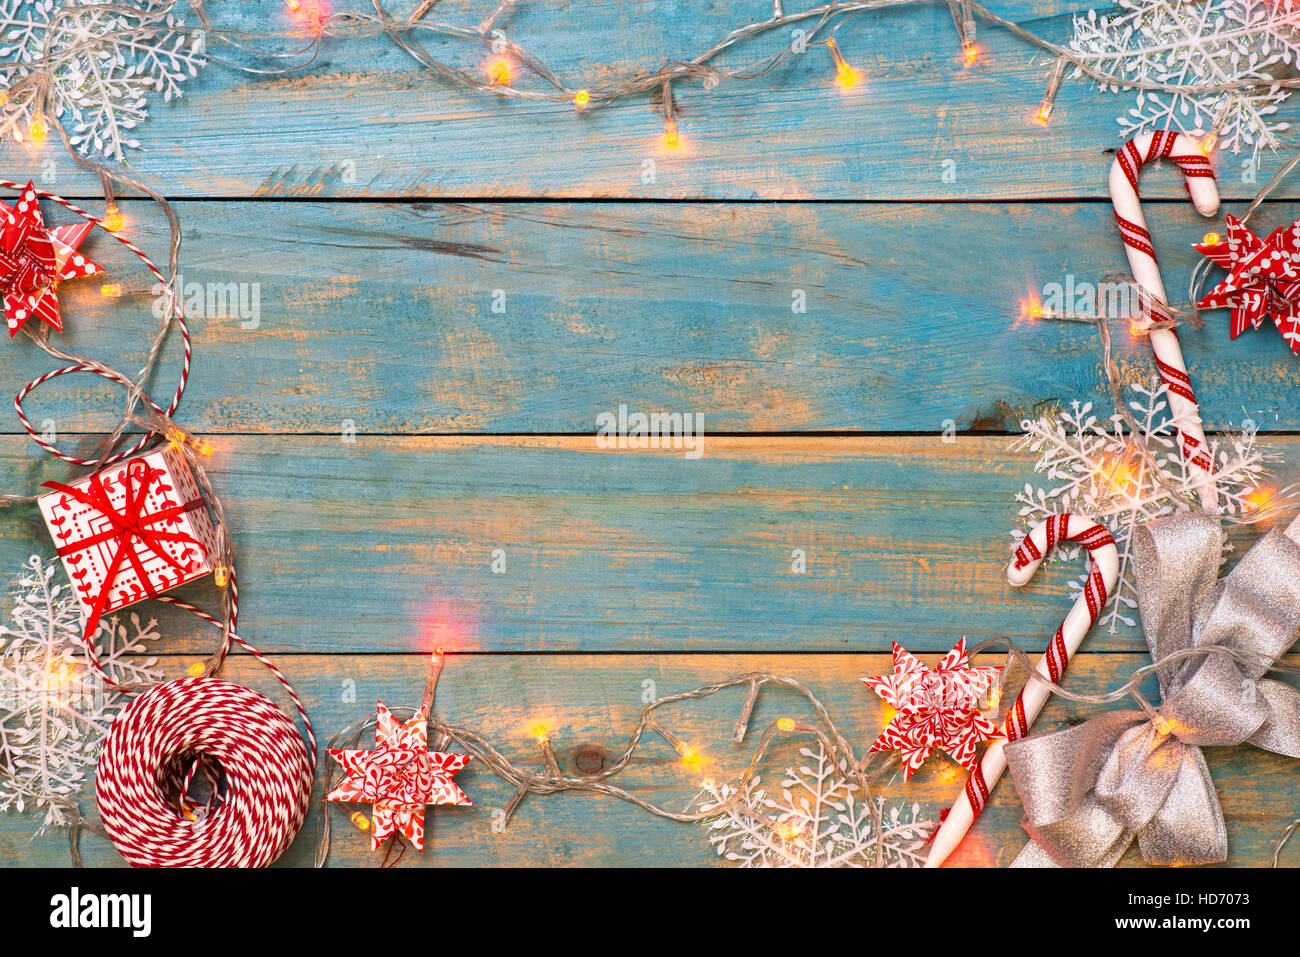 Fond de Noël avec des décorations sur fond de bois. Top View with copy space Banque D'Images